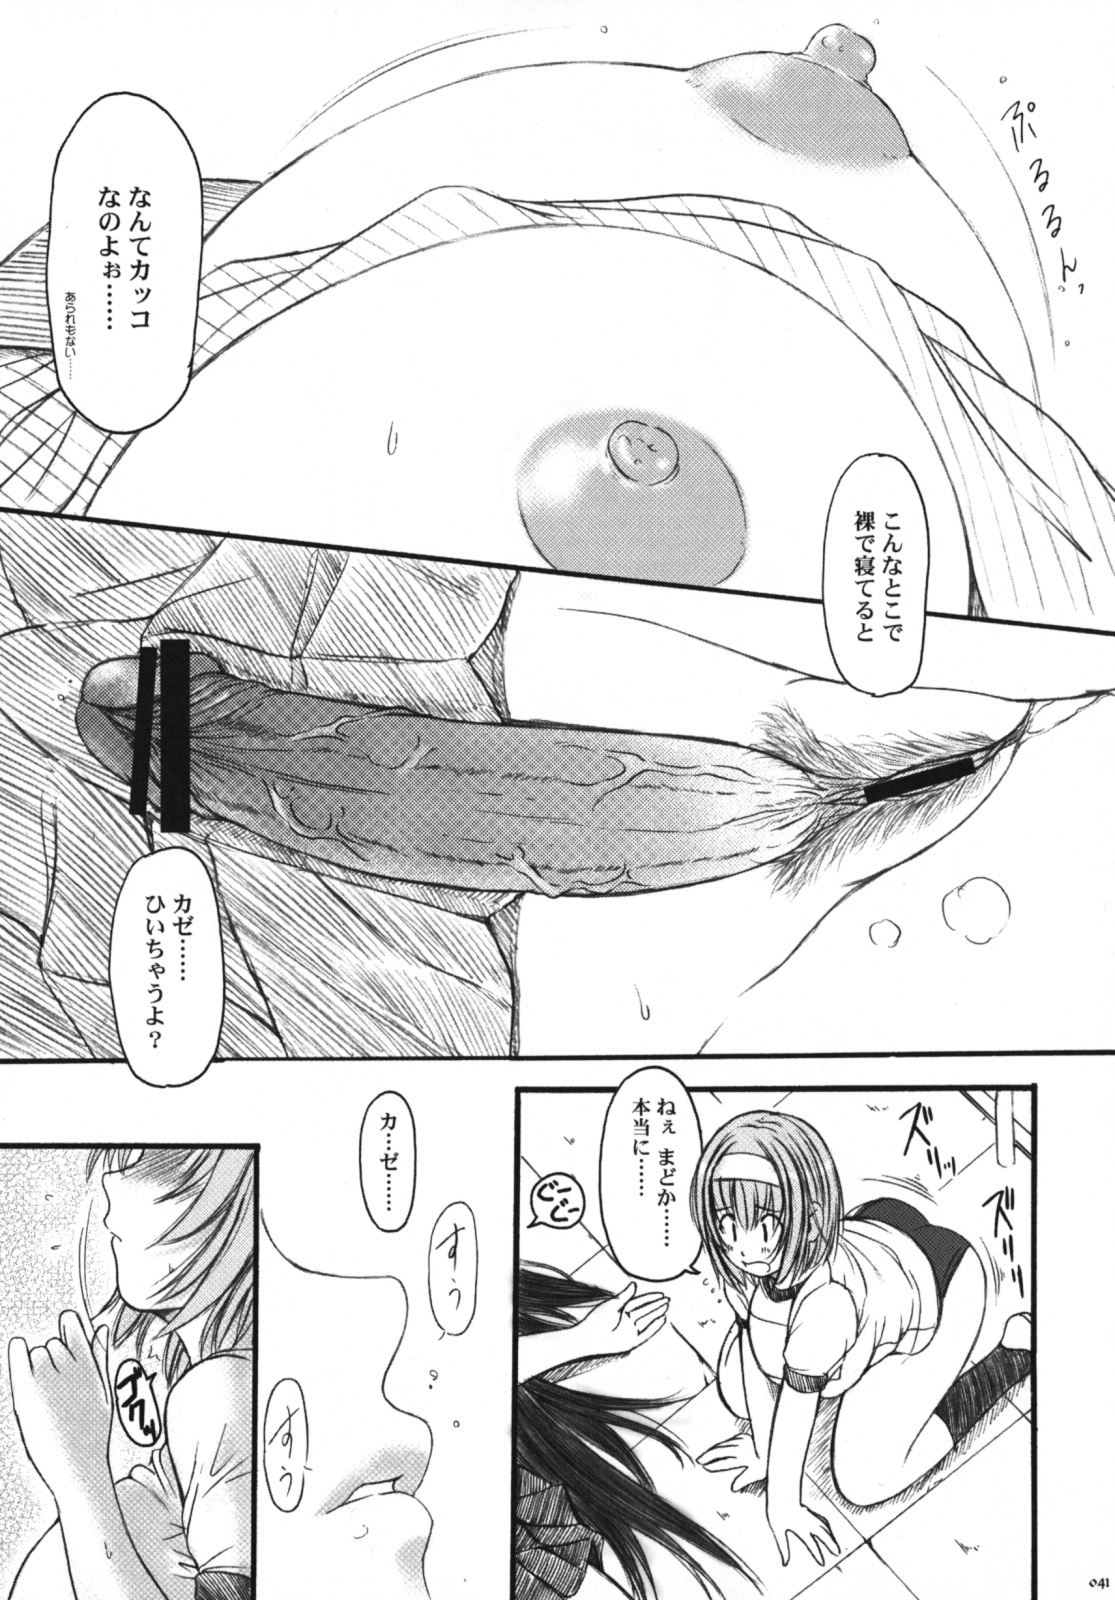 [Kesson Shoujo] Kesson Shoujo Memories 3 -Futanari Ero Manga- 39